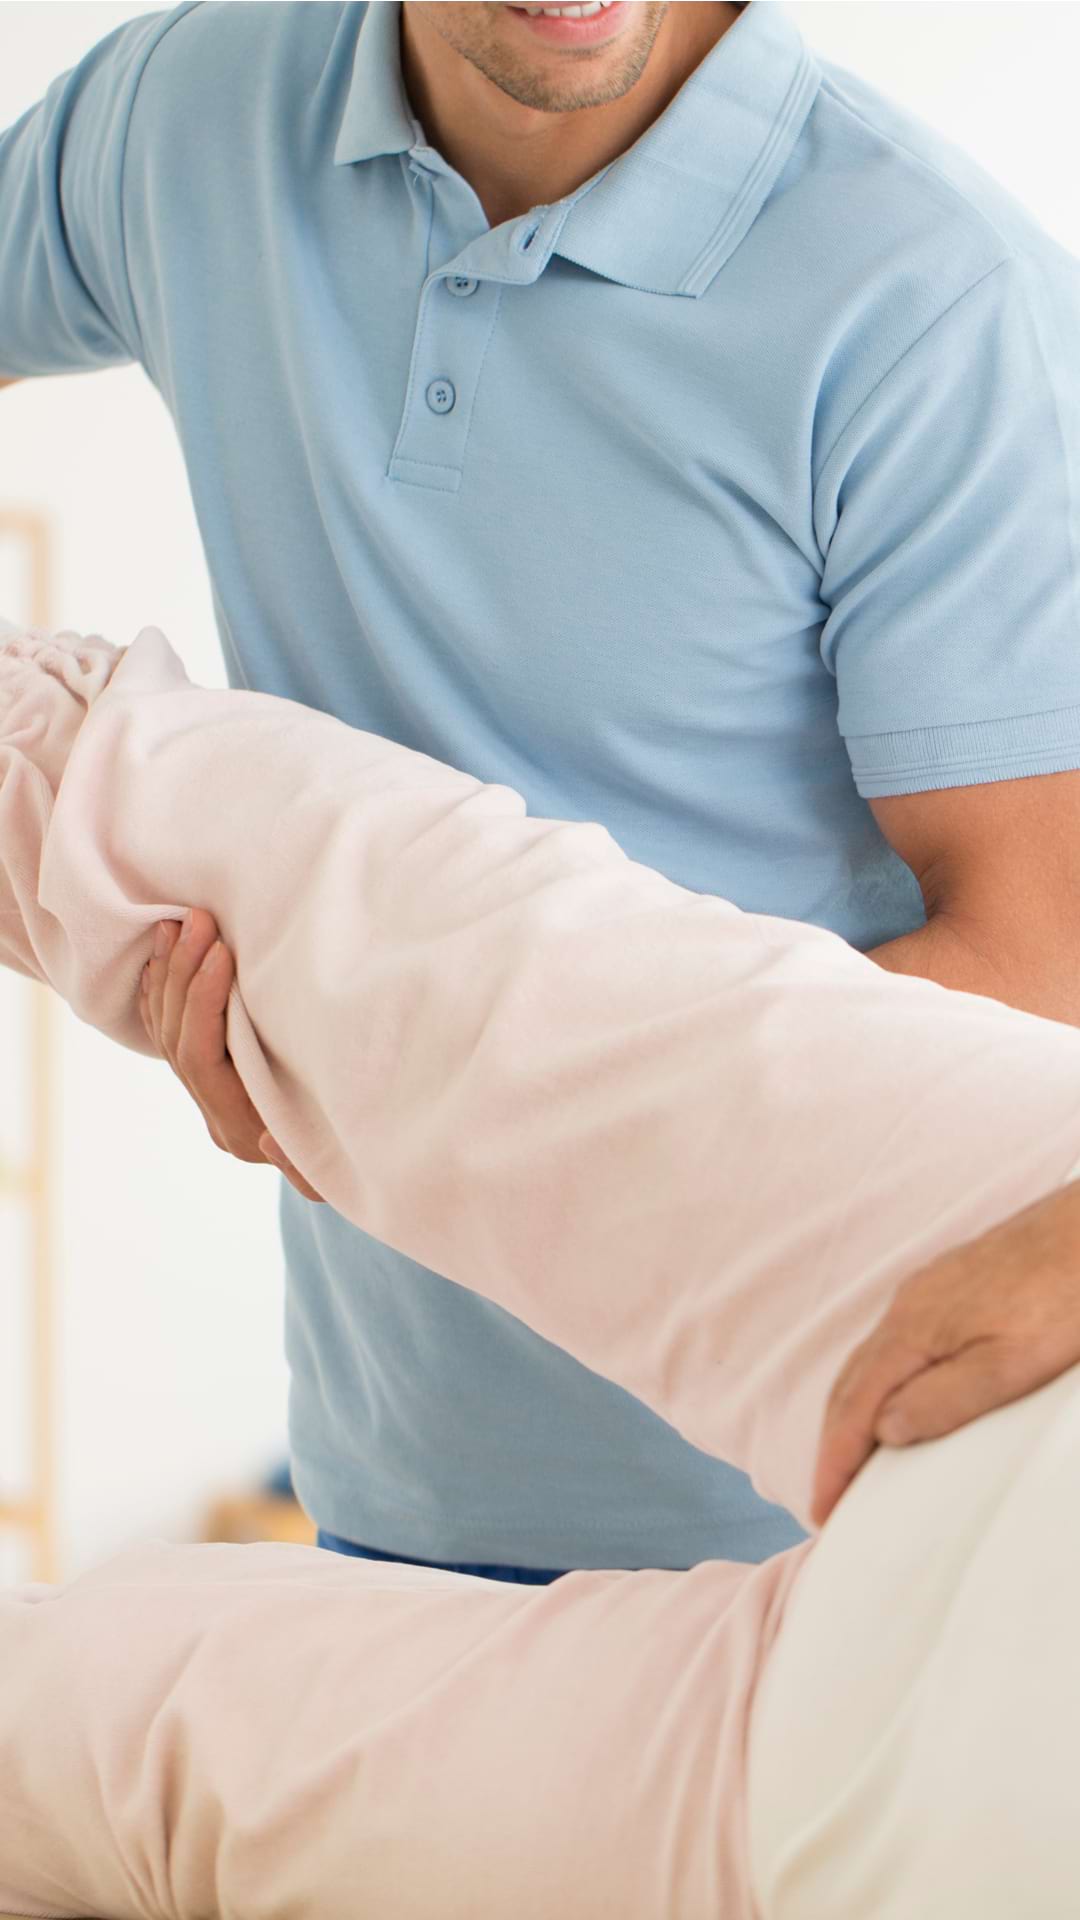 Durere în picioarele articulației șoldului din stânga - Trental pentru dureri articulare